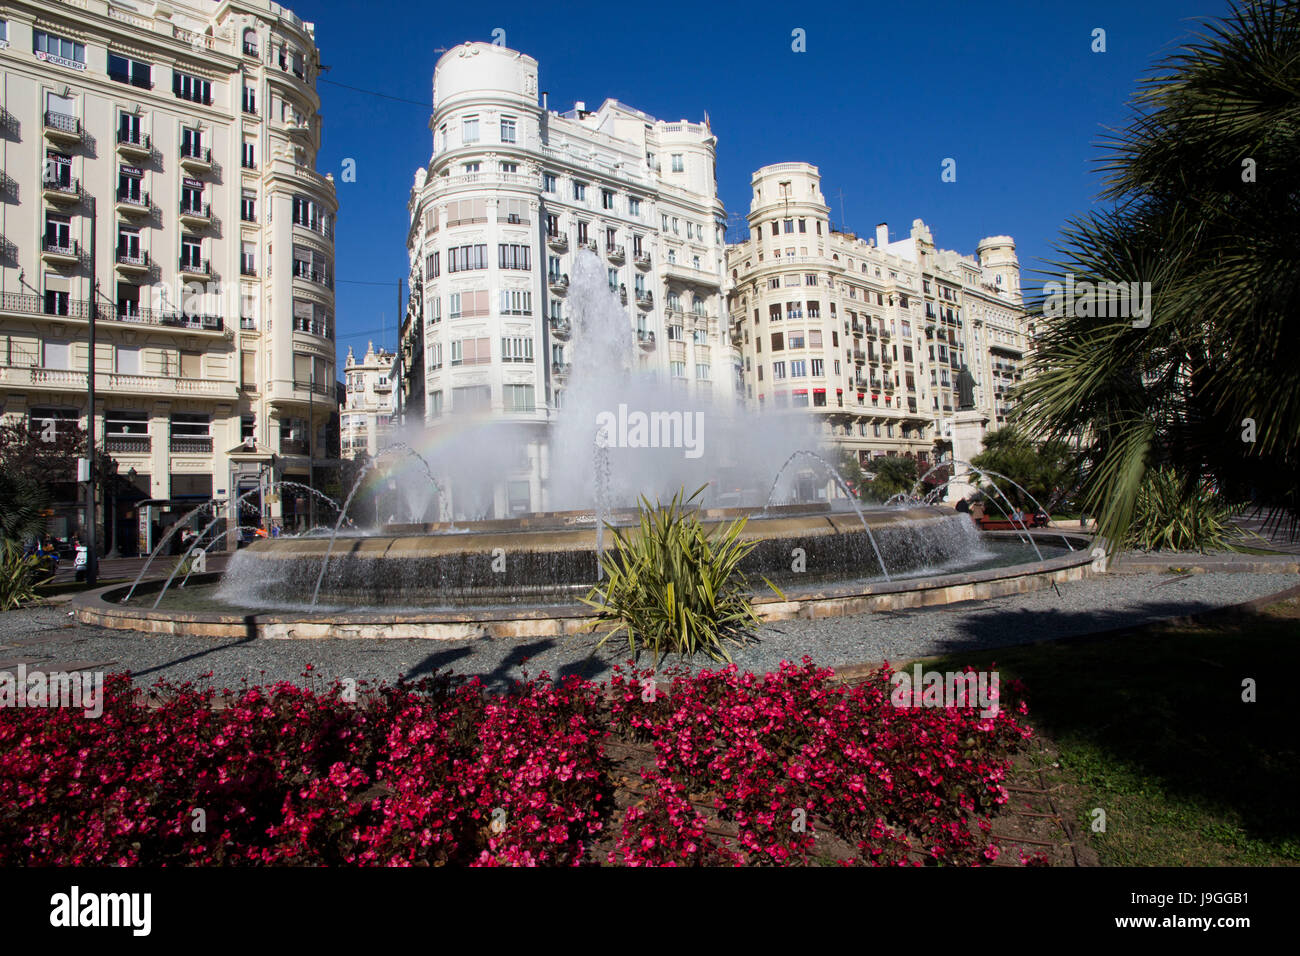 Von Springbrunnen und Blumen geschmückt, Plaza del Ayuntamiento (Rathausplatz) ist die grandiosen Hauptplatz von Valencia und ein toller Ort, um eine Tour zu beginnen. Stockfoto